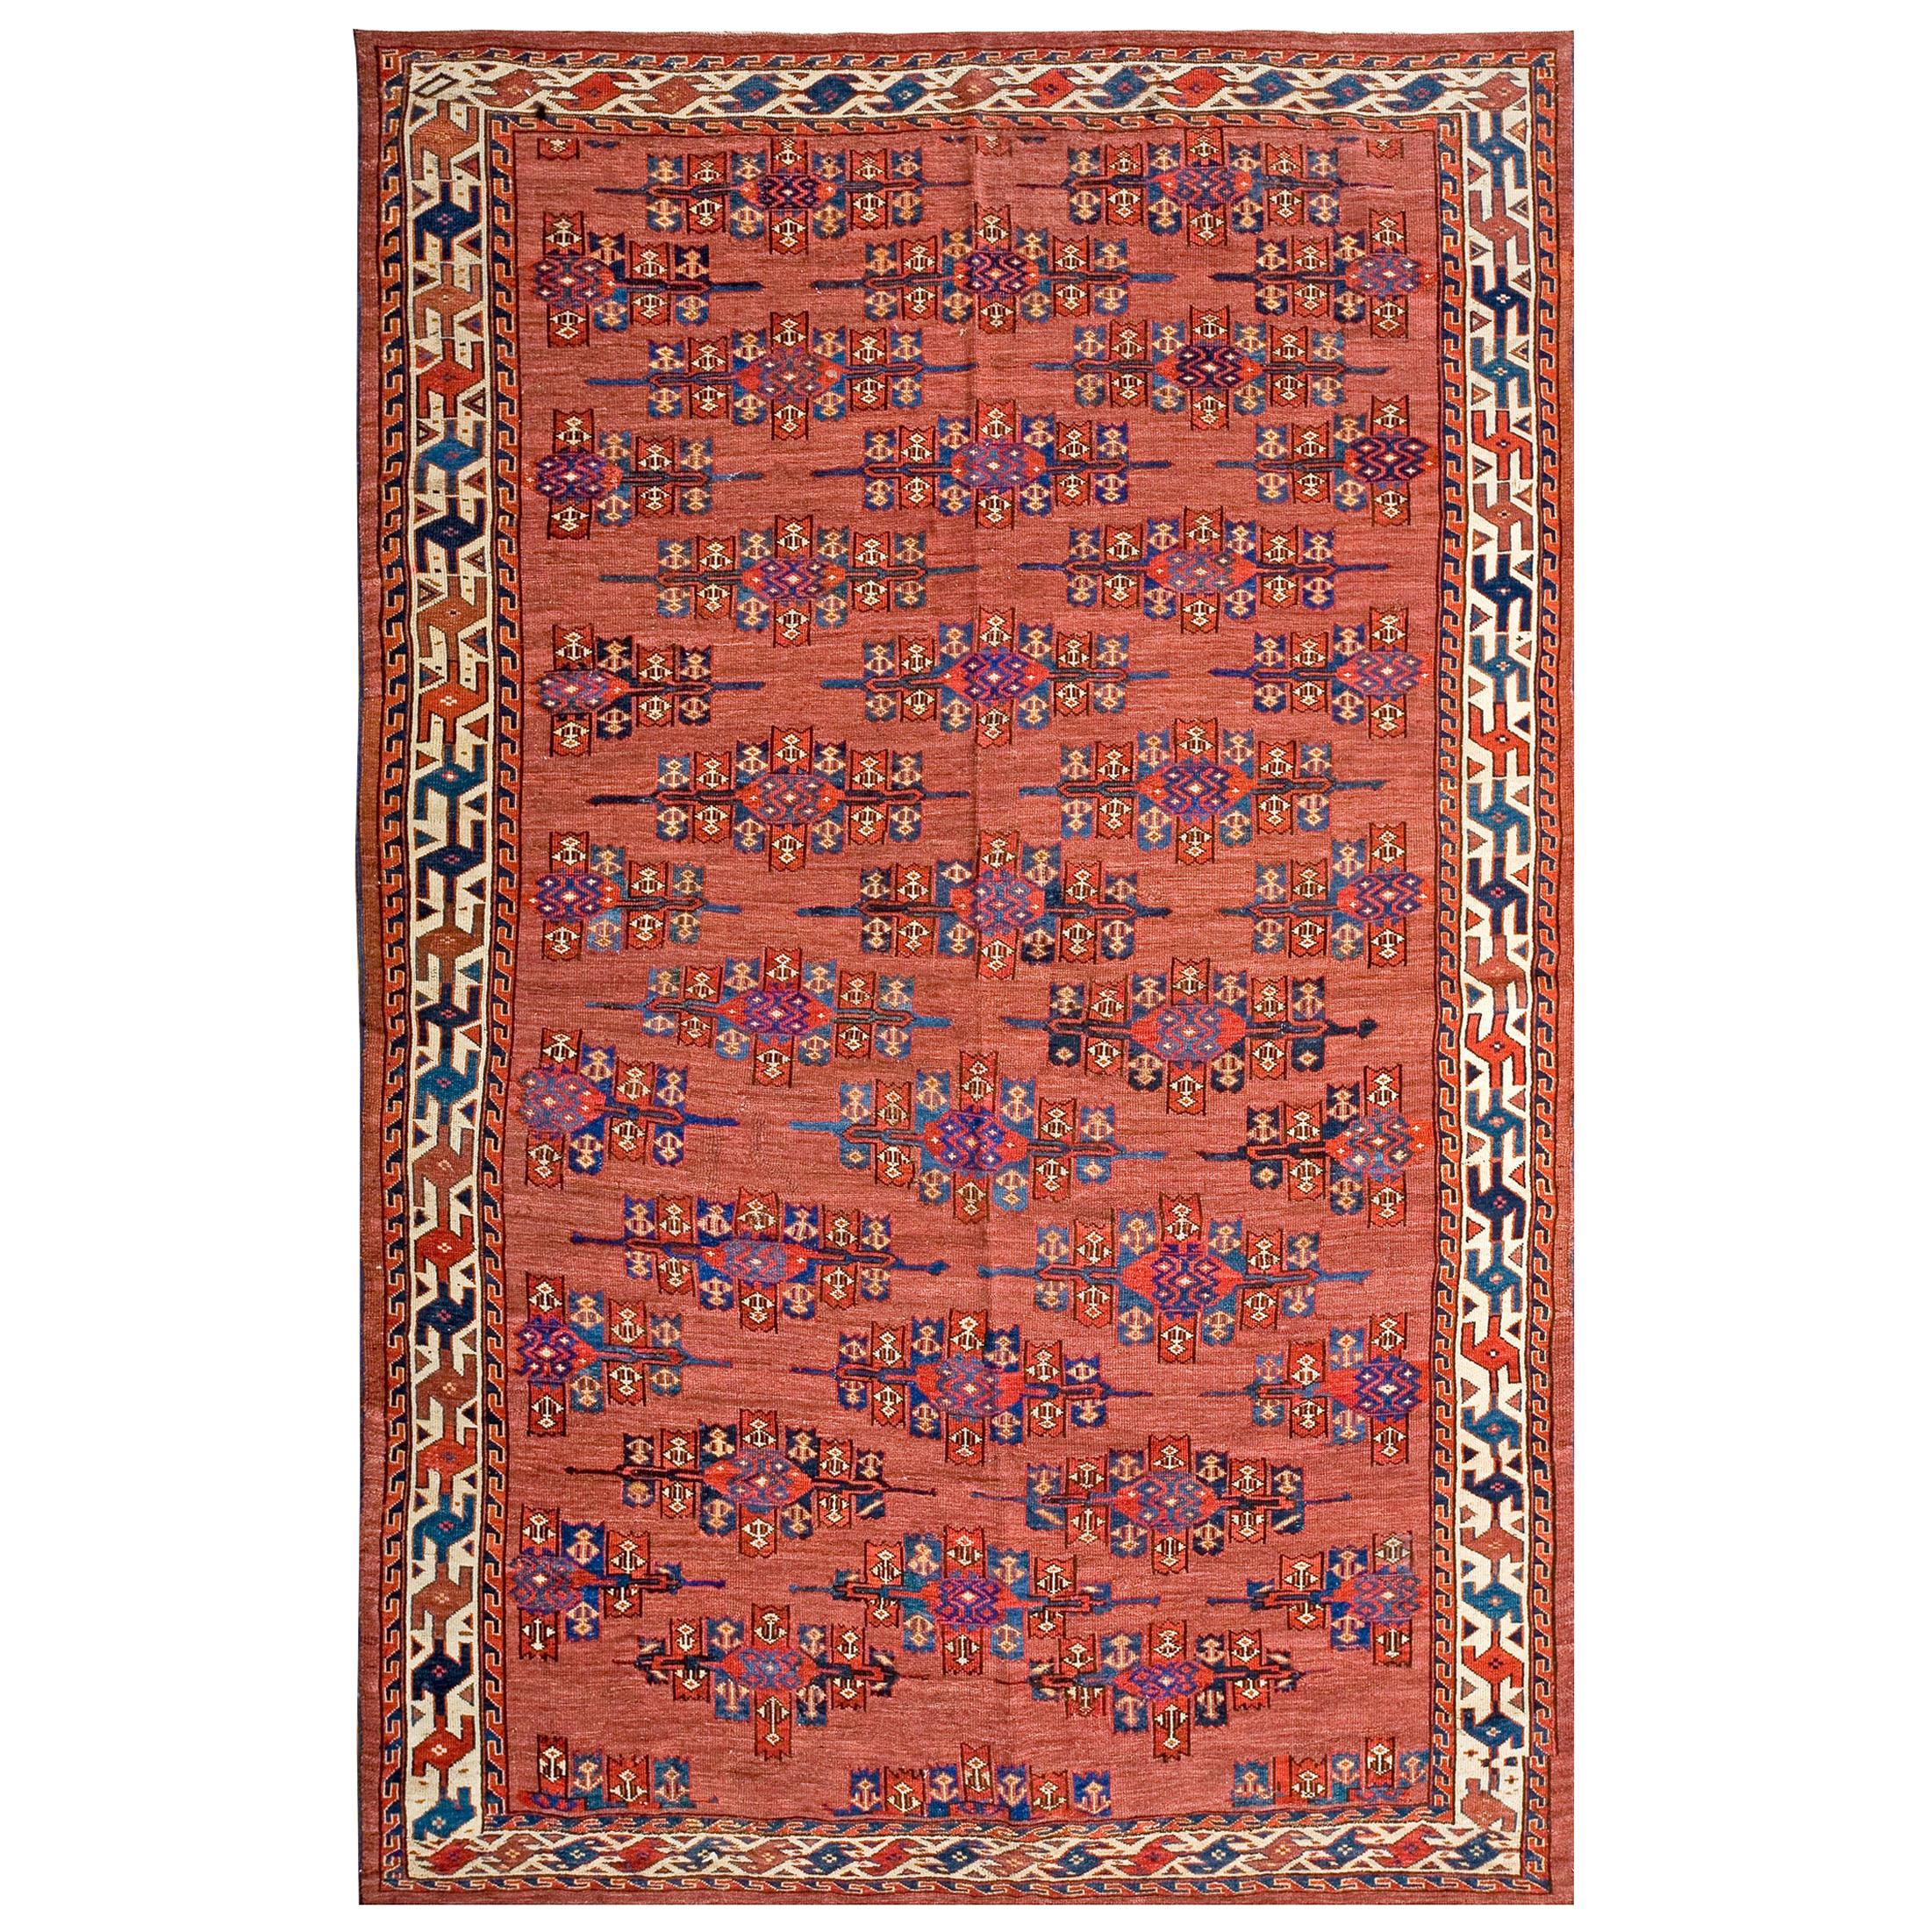 19th Century Central Asian Turkmen Yamoud Carpet ( 5'2" x 7'10" - 158 x 239 ) For Sale